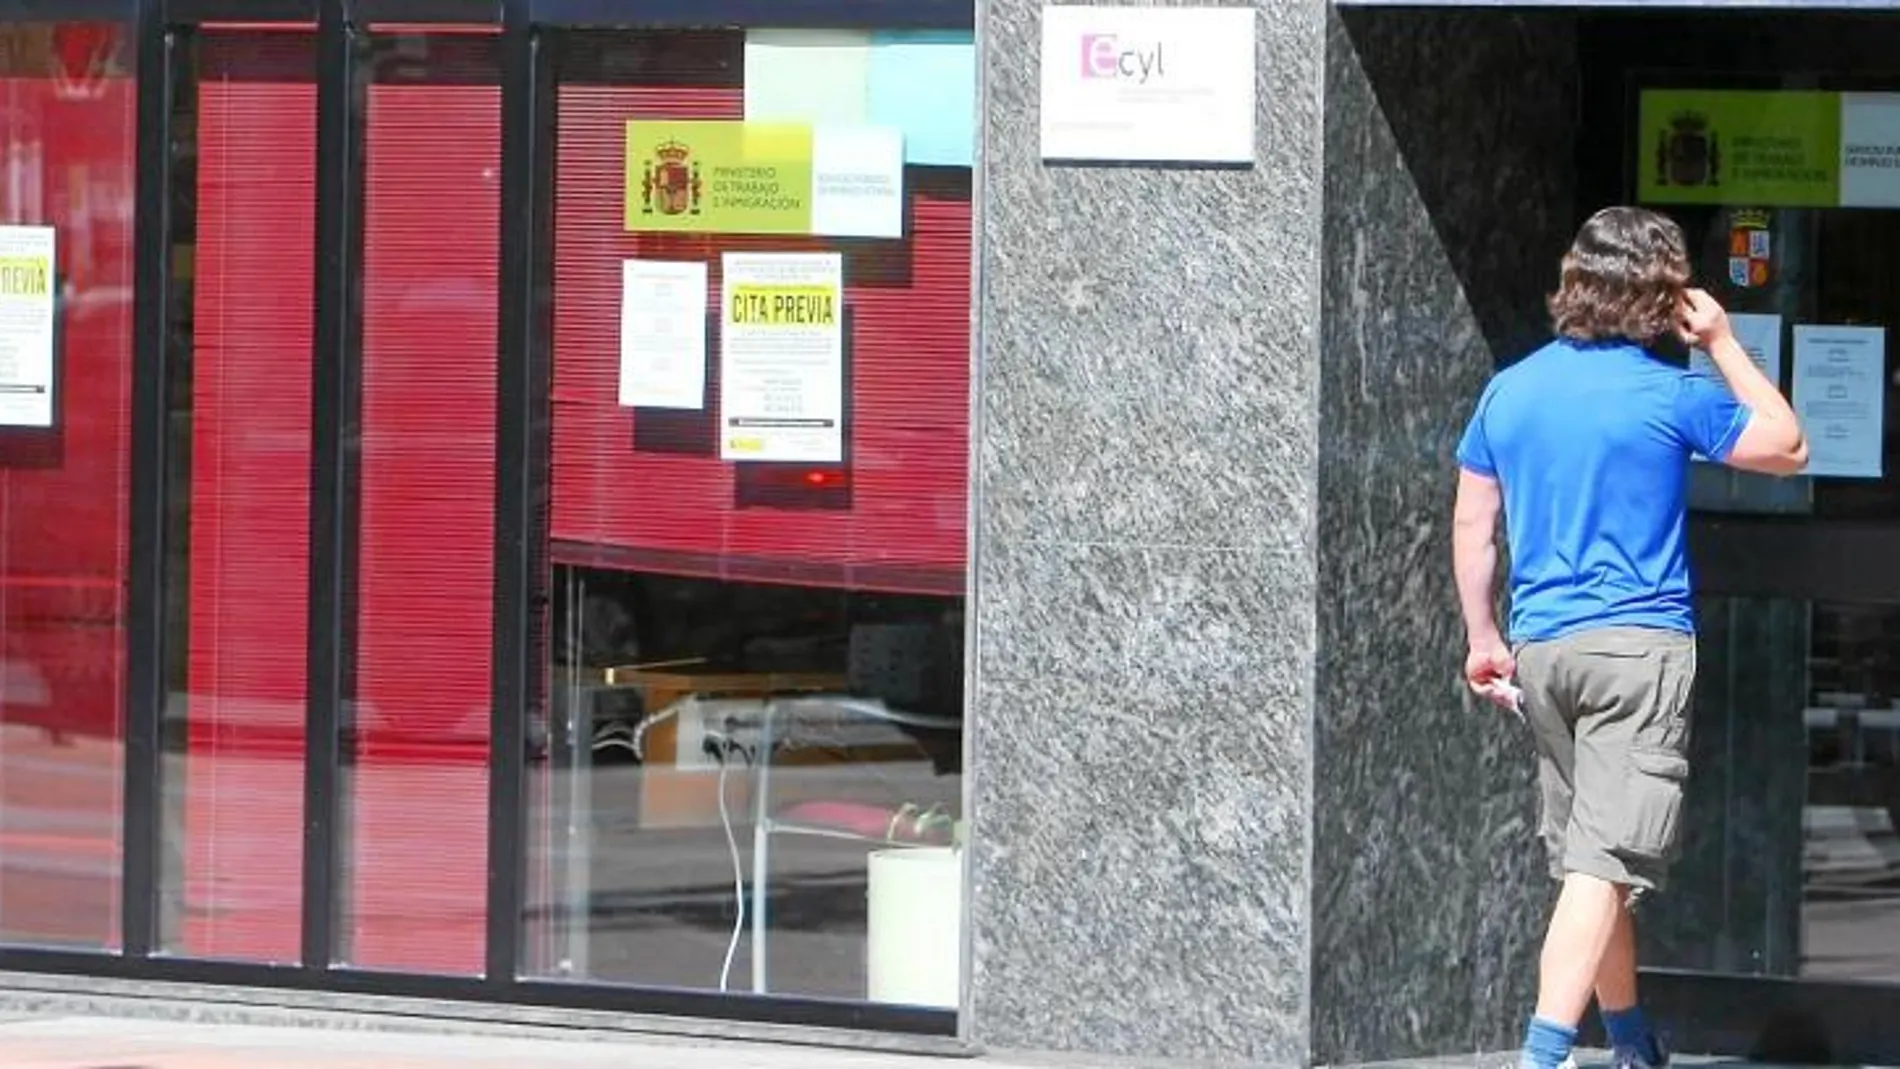 Un joven se dispone a acceder a la oficina del Ecyl en la localidad de Ponferrada